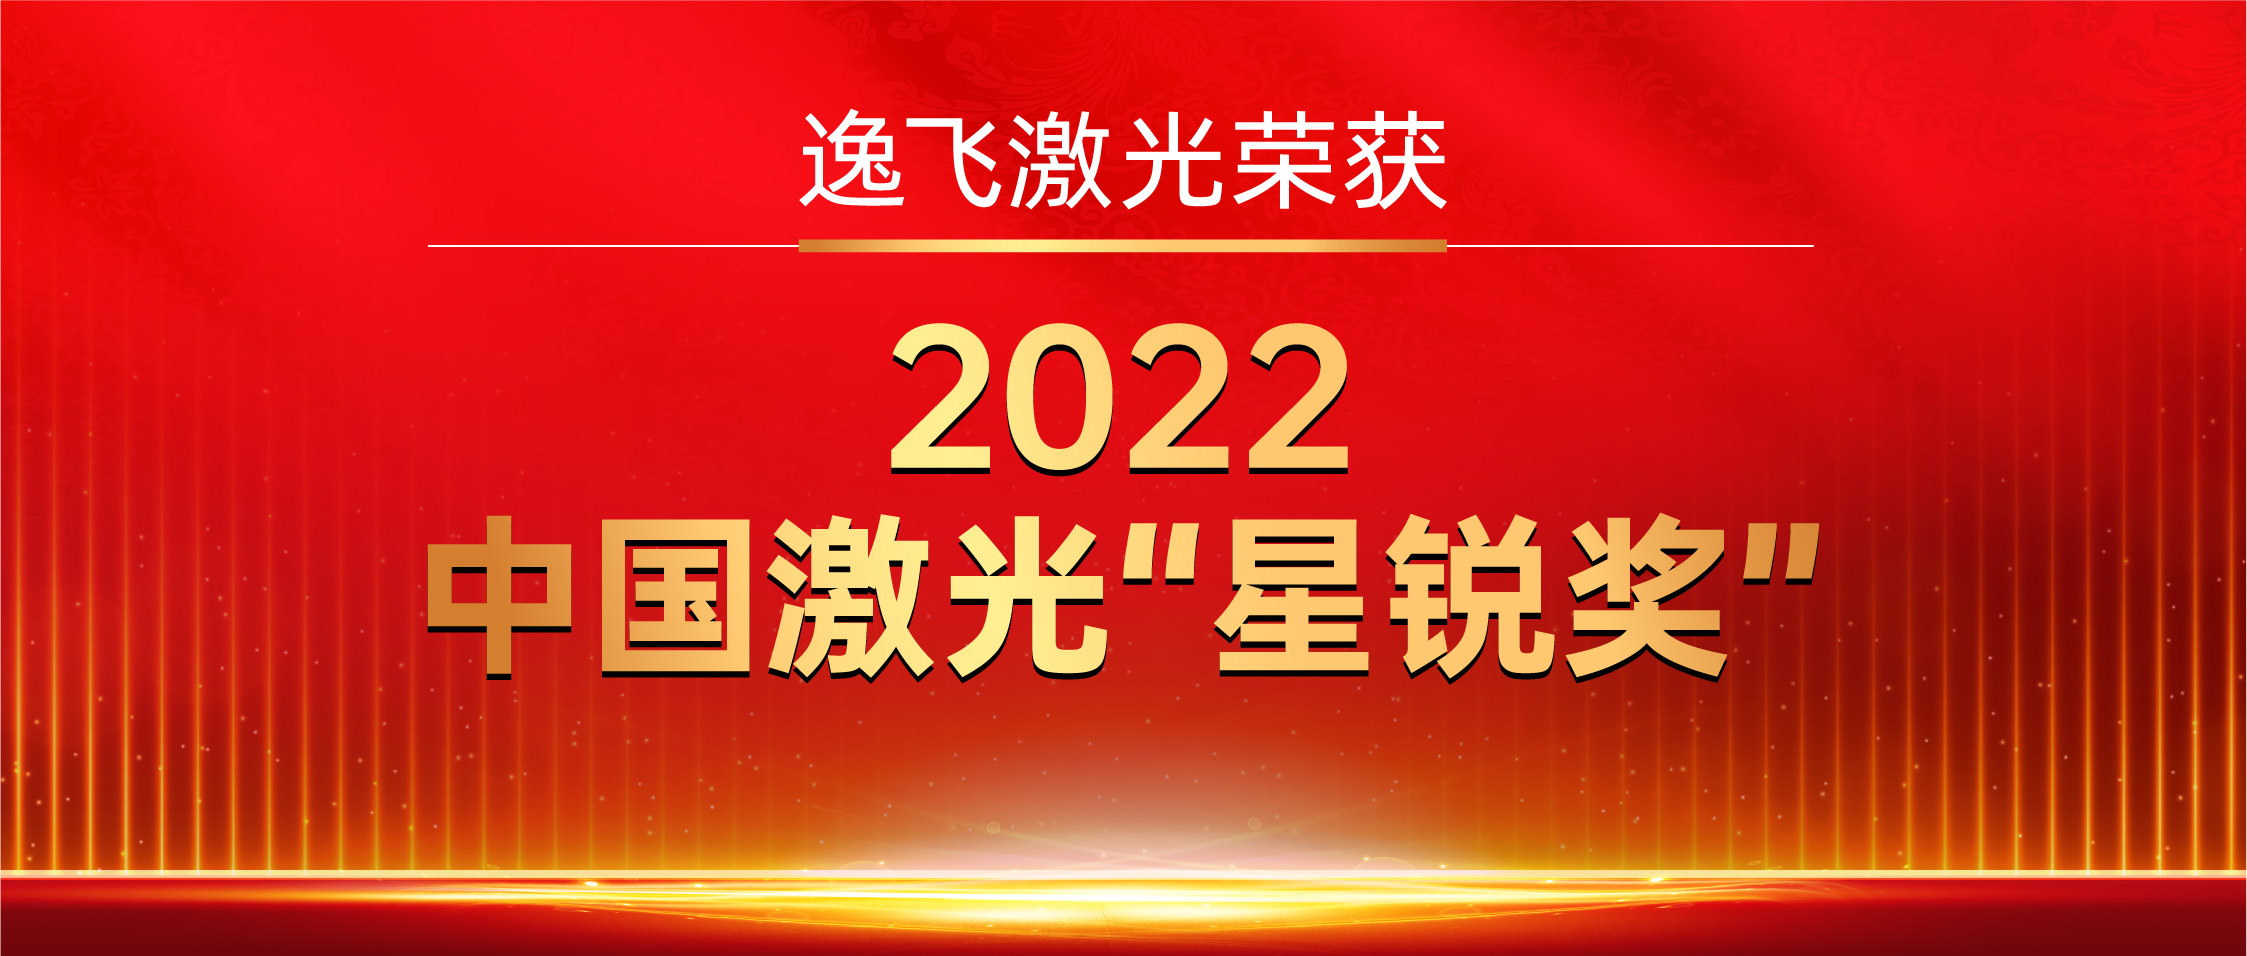 逸飛激光榮獲“2022中國激光星銳獎”